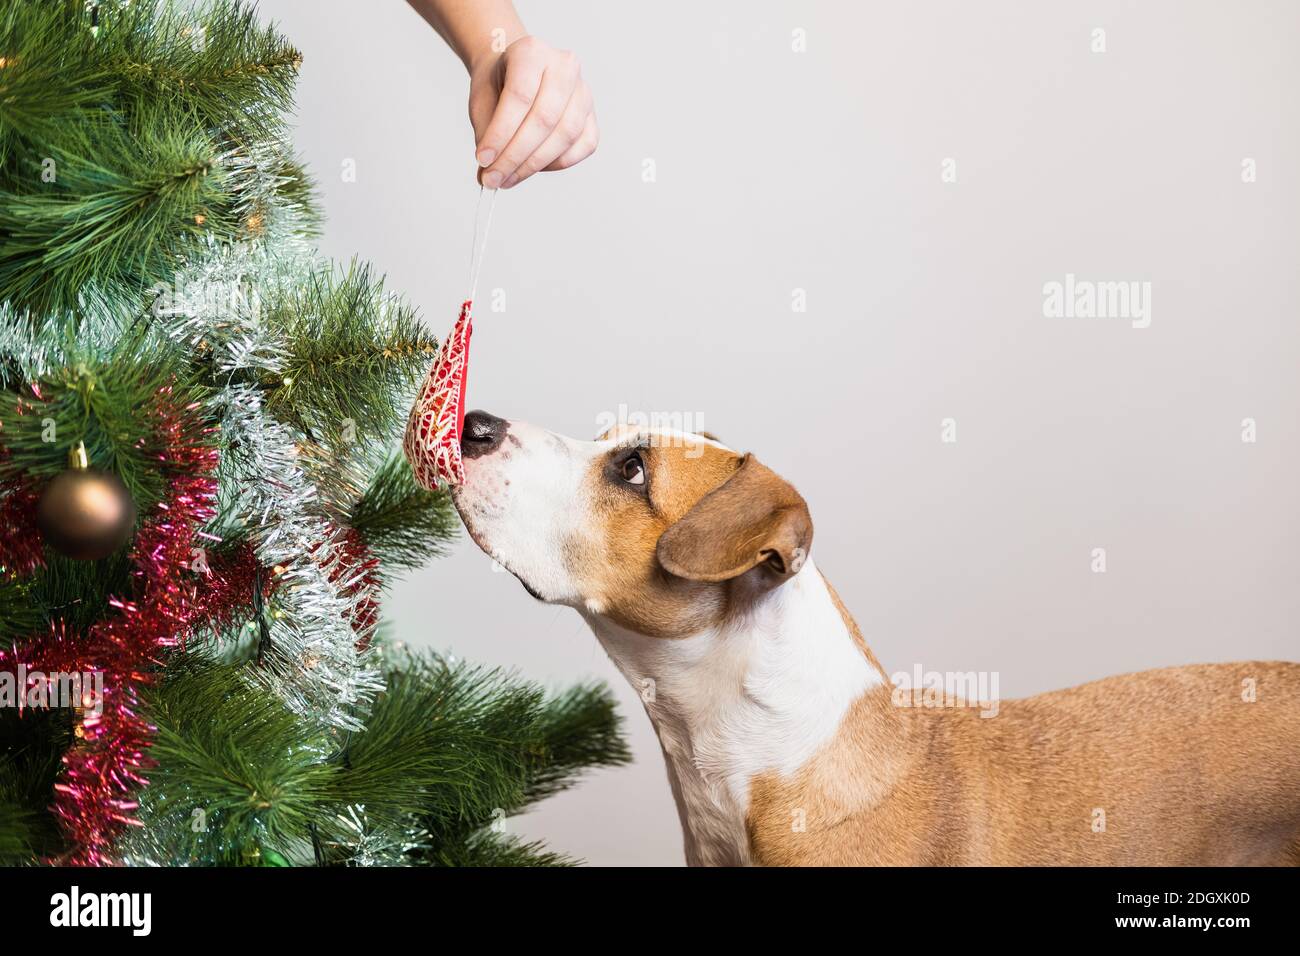 Cane interessato ai giocattoli dell'albero di natale, concetto di vacanze di nuovo anno. Cute staffordshire terrier siede vicino ad un abete e sniffs una decorazione fatta a mano Foto Stock